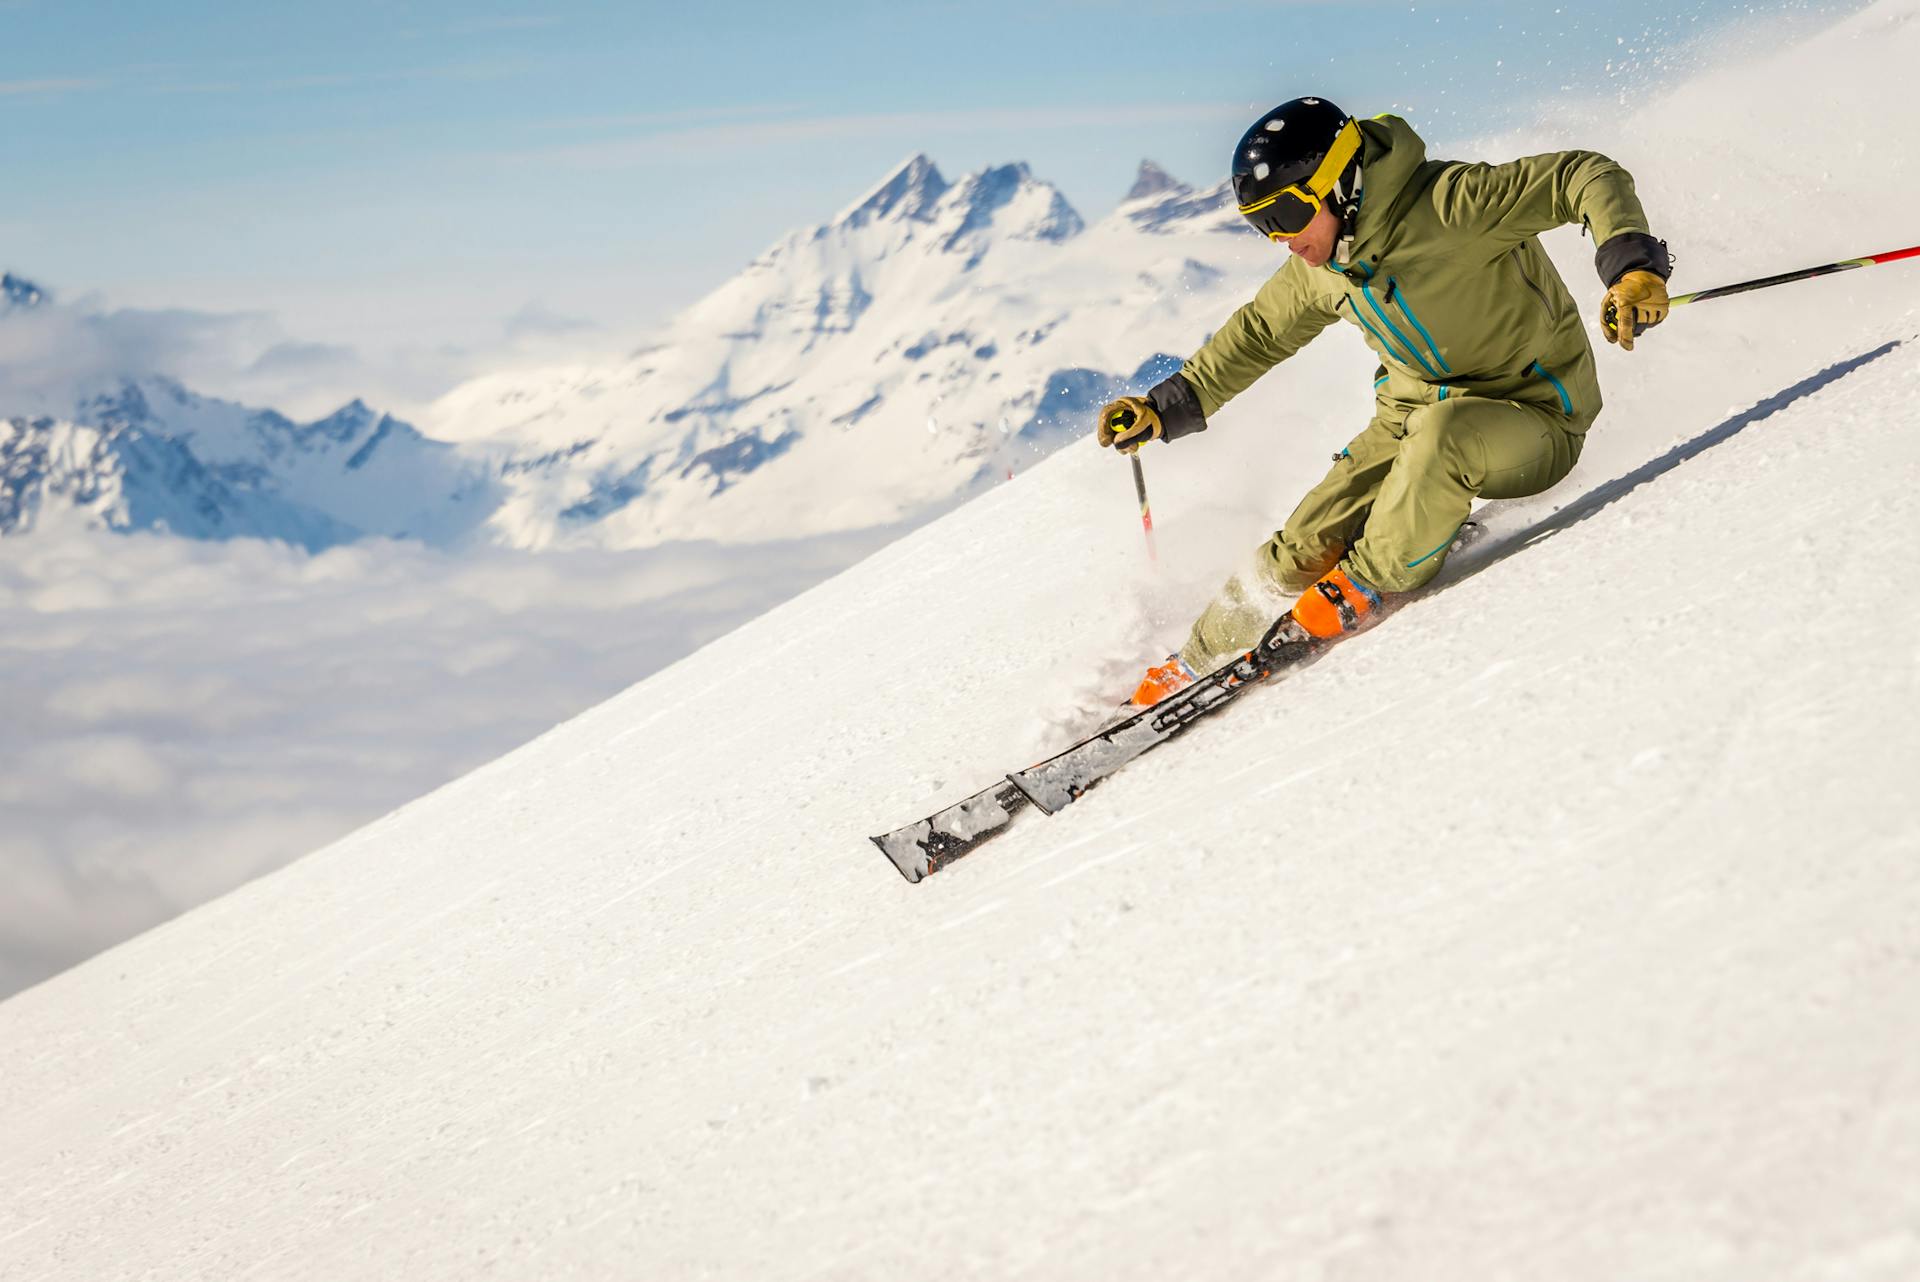 Skier speeds down steep mountain